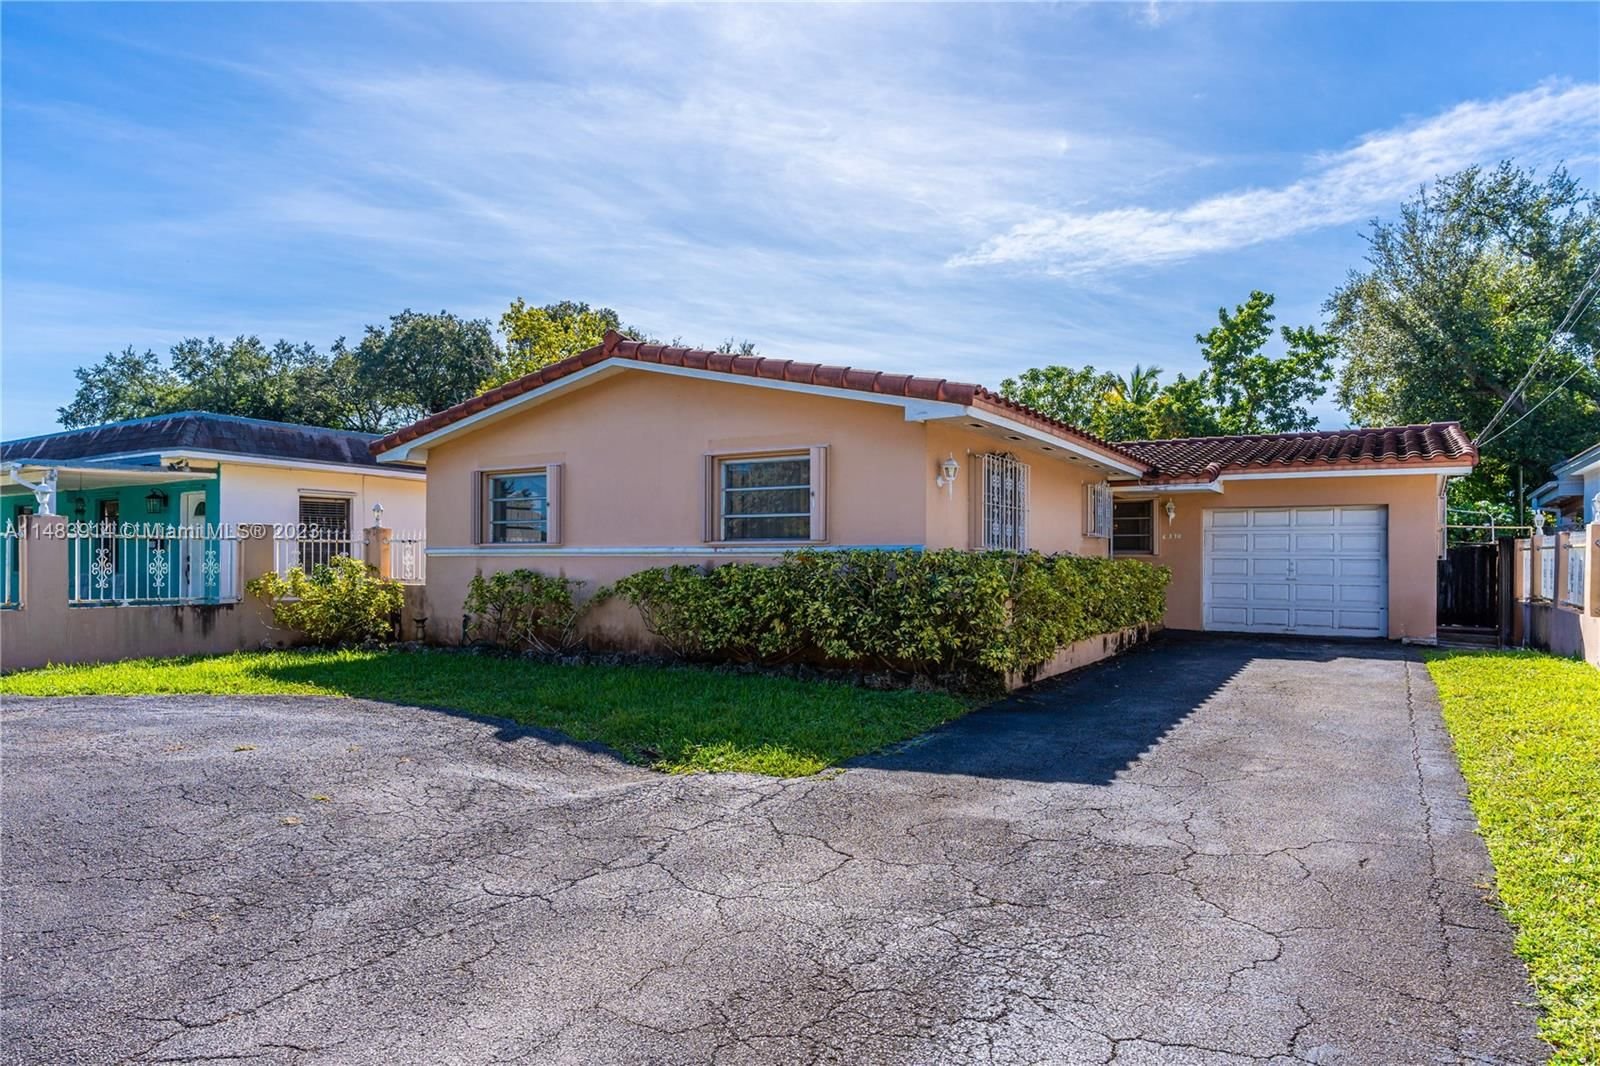 Real estate property located at 6370 34th St, Miami-Dade County, CORAL VILLAS REV, Miami, FL